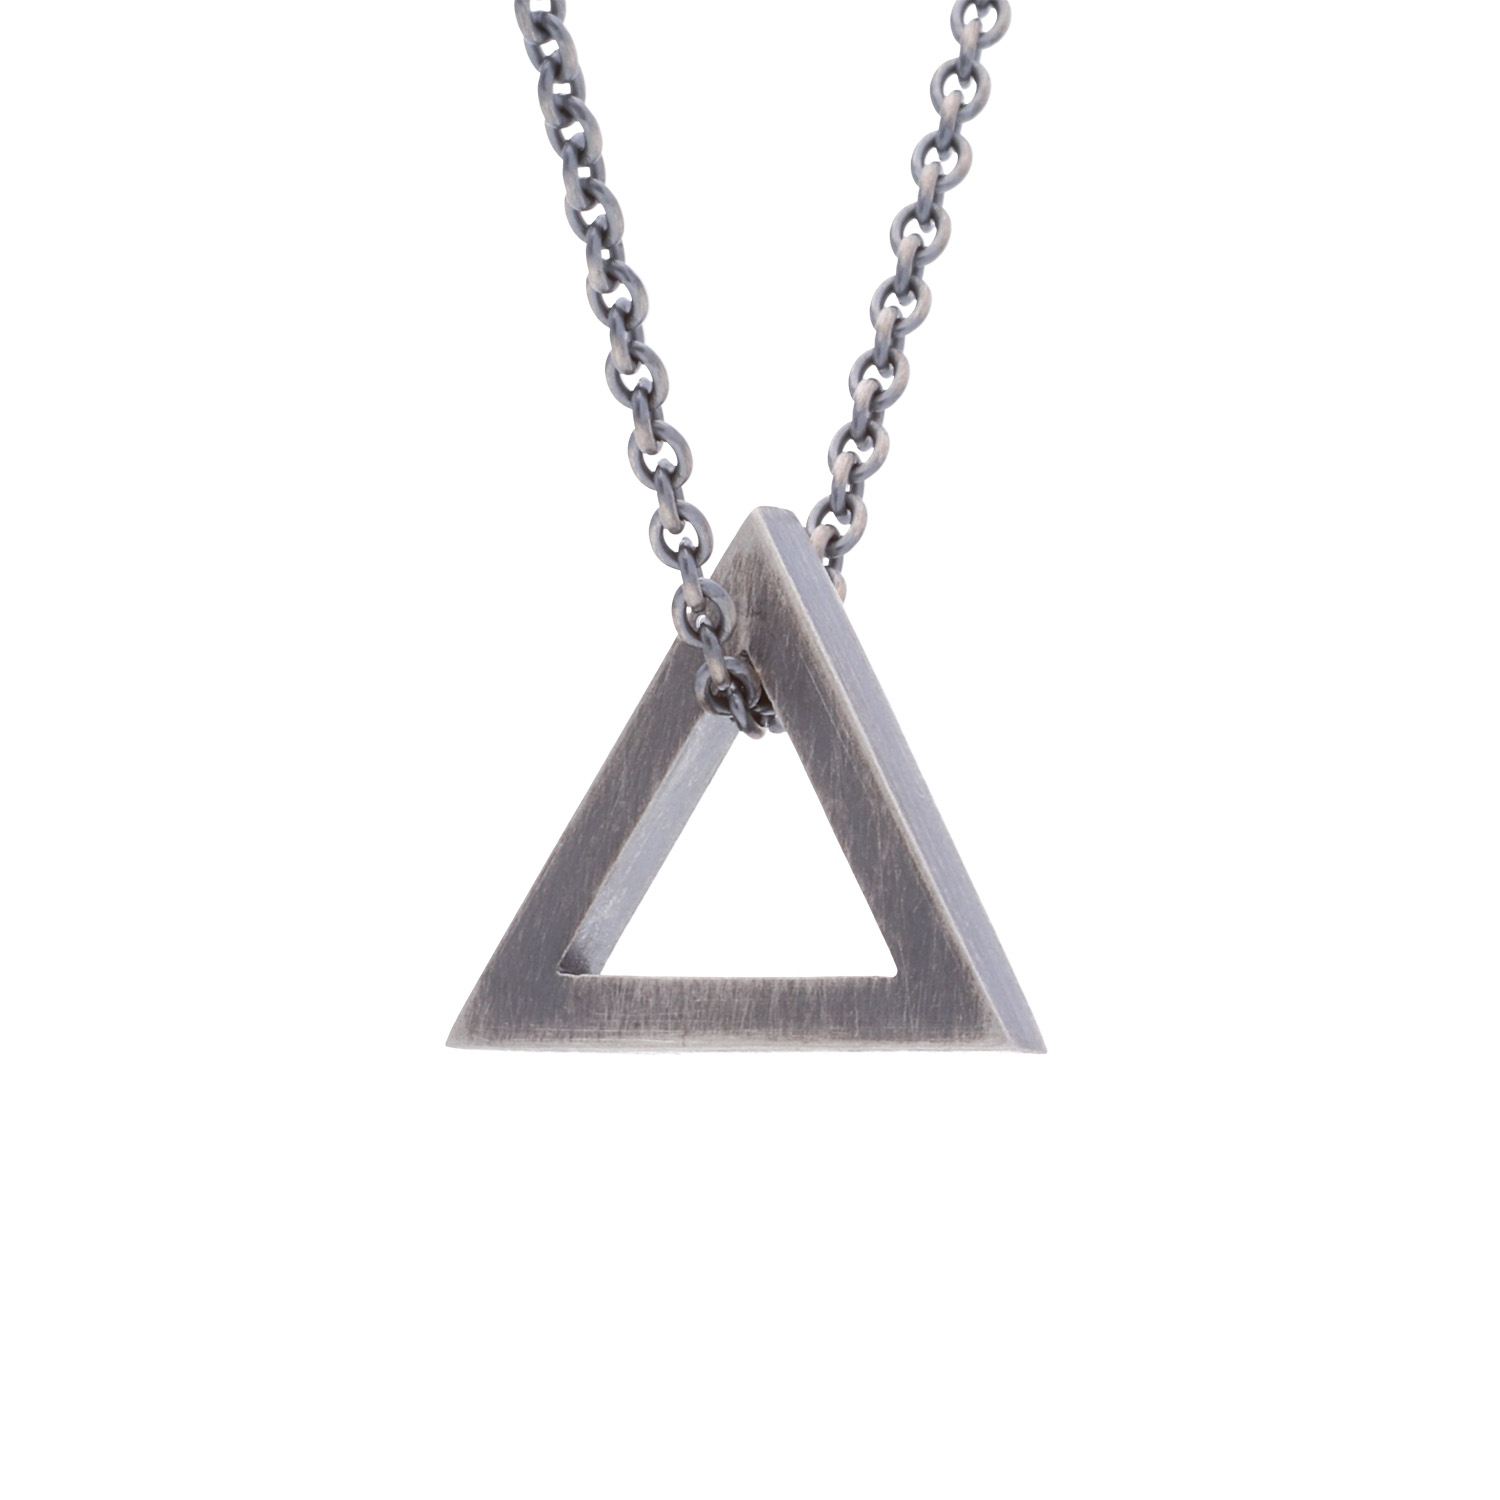 Silber 925 – Dreieck Kette oxidiert